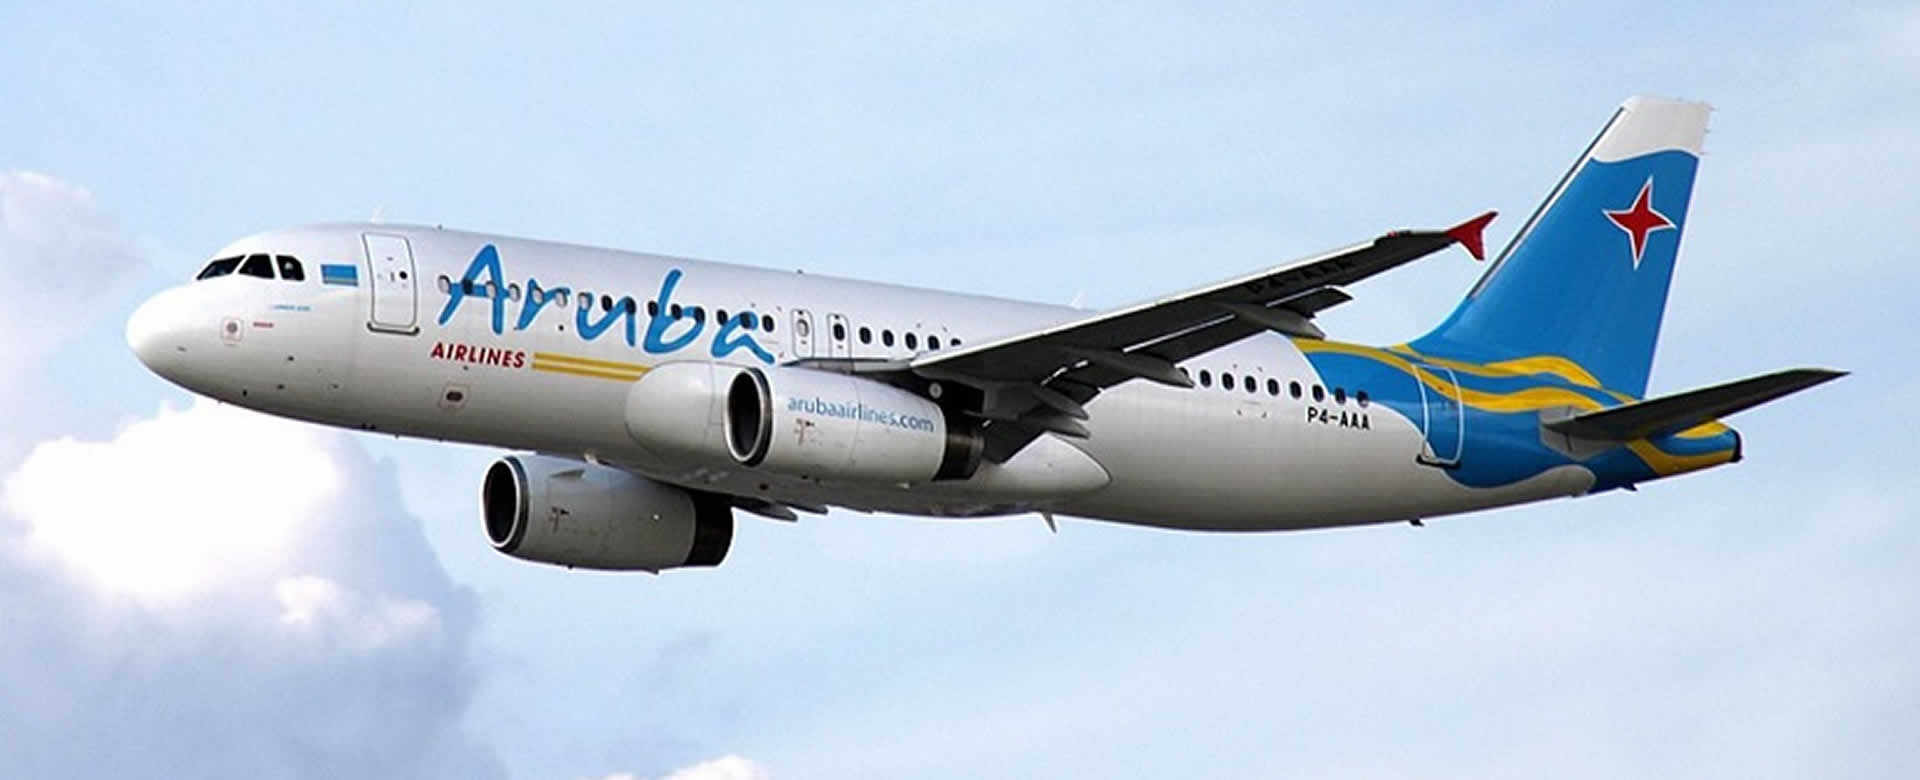 Nicaragua y Cuba estrenan conexión aérea con Aruba Airlines Viva